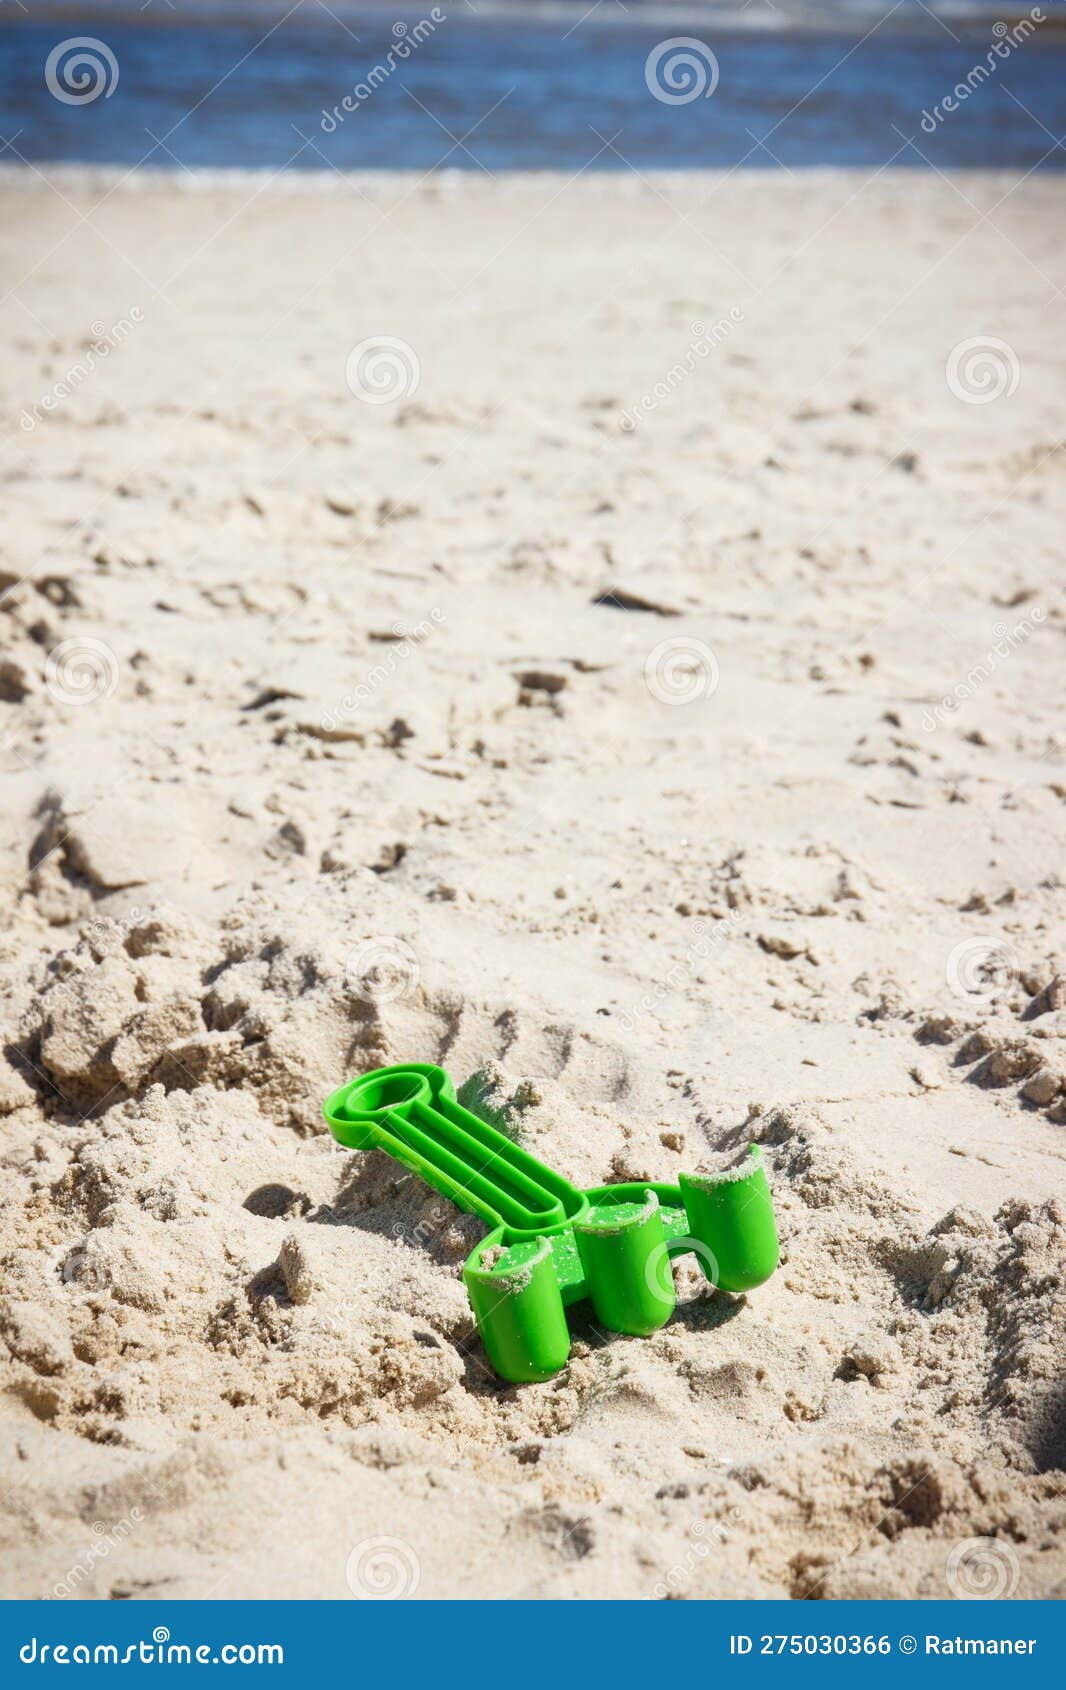 Rastrillo Verde Plástico Para Relajarse O Jugar En La Playa. Tiempo De  Vacaciones Y Desarrollo Del Niño Foto de archivo - Imagen de verde, pala:  275030366